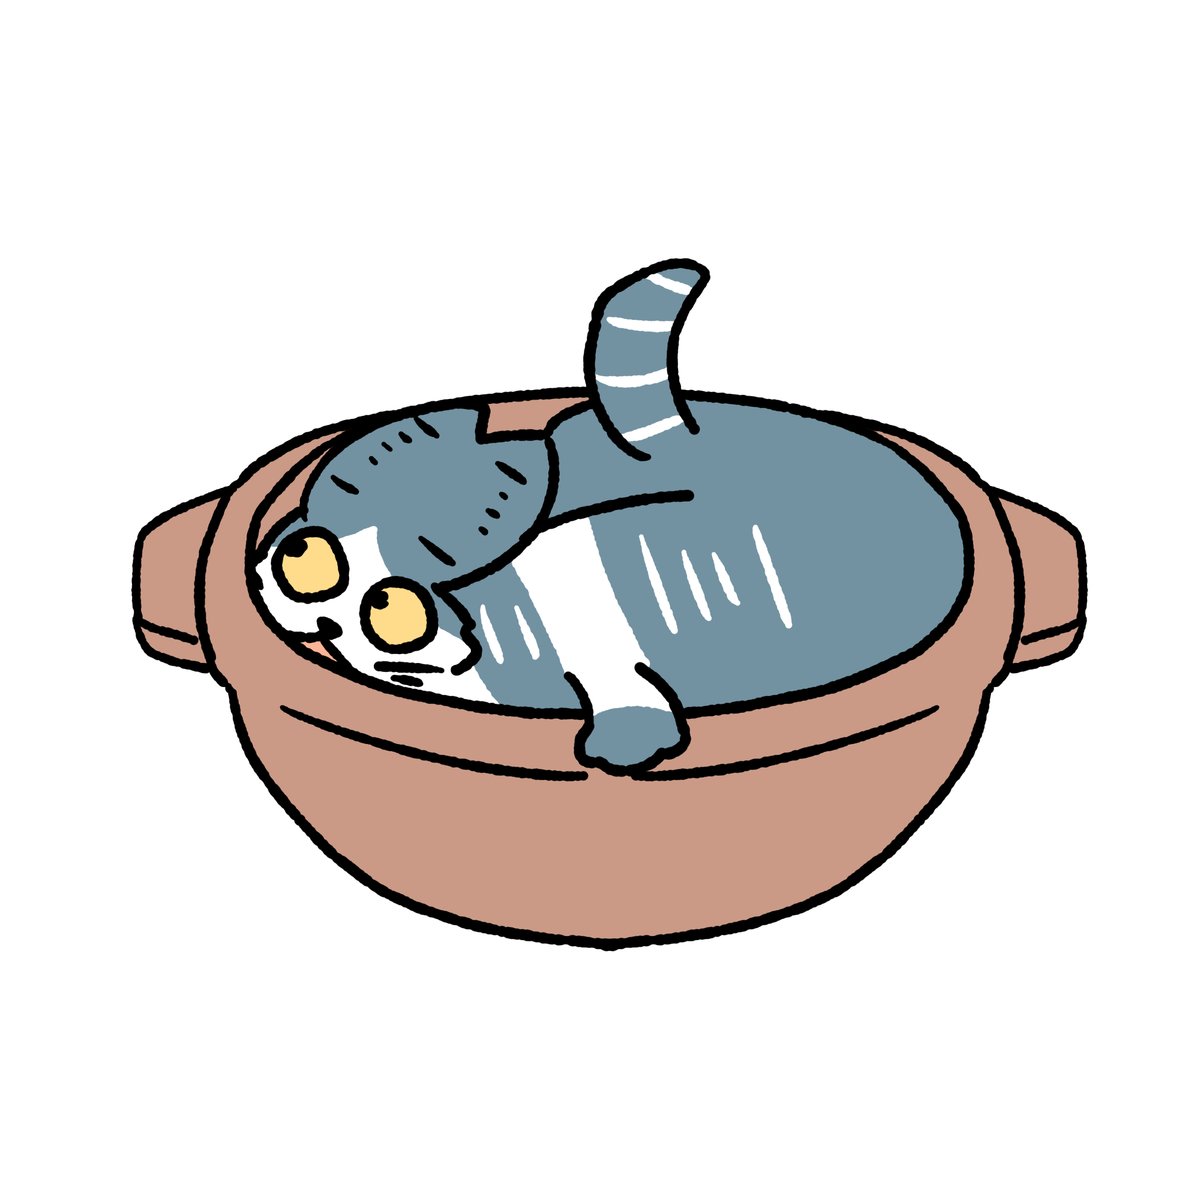 「#本ミリバール 猫鍋です」|honmirinのイラスト